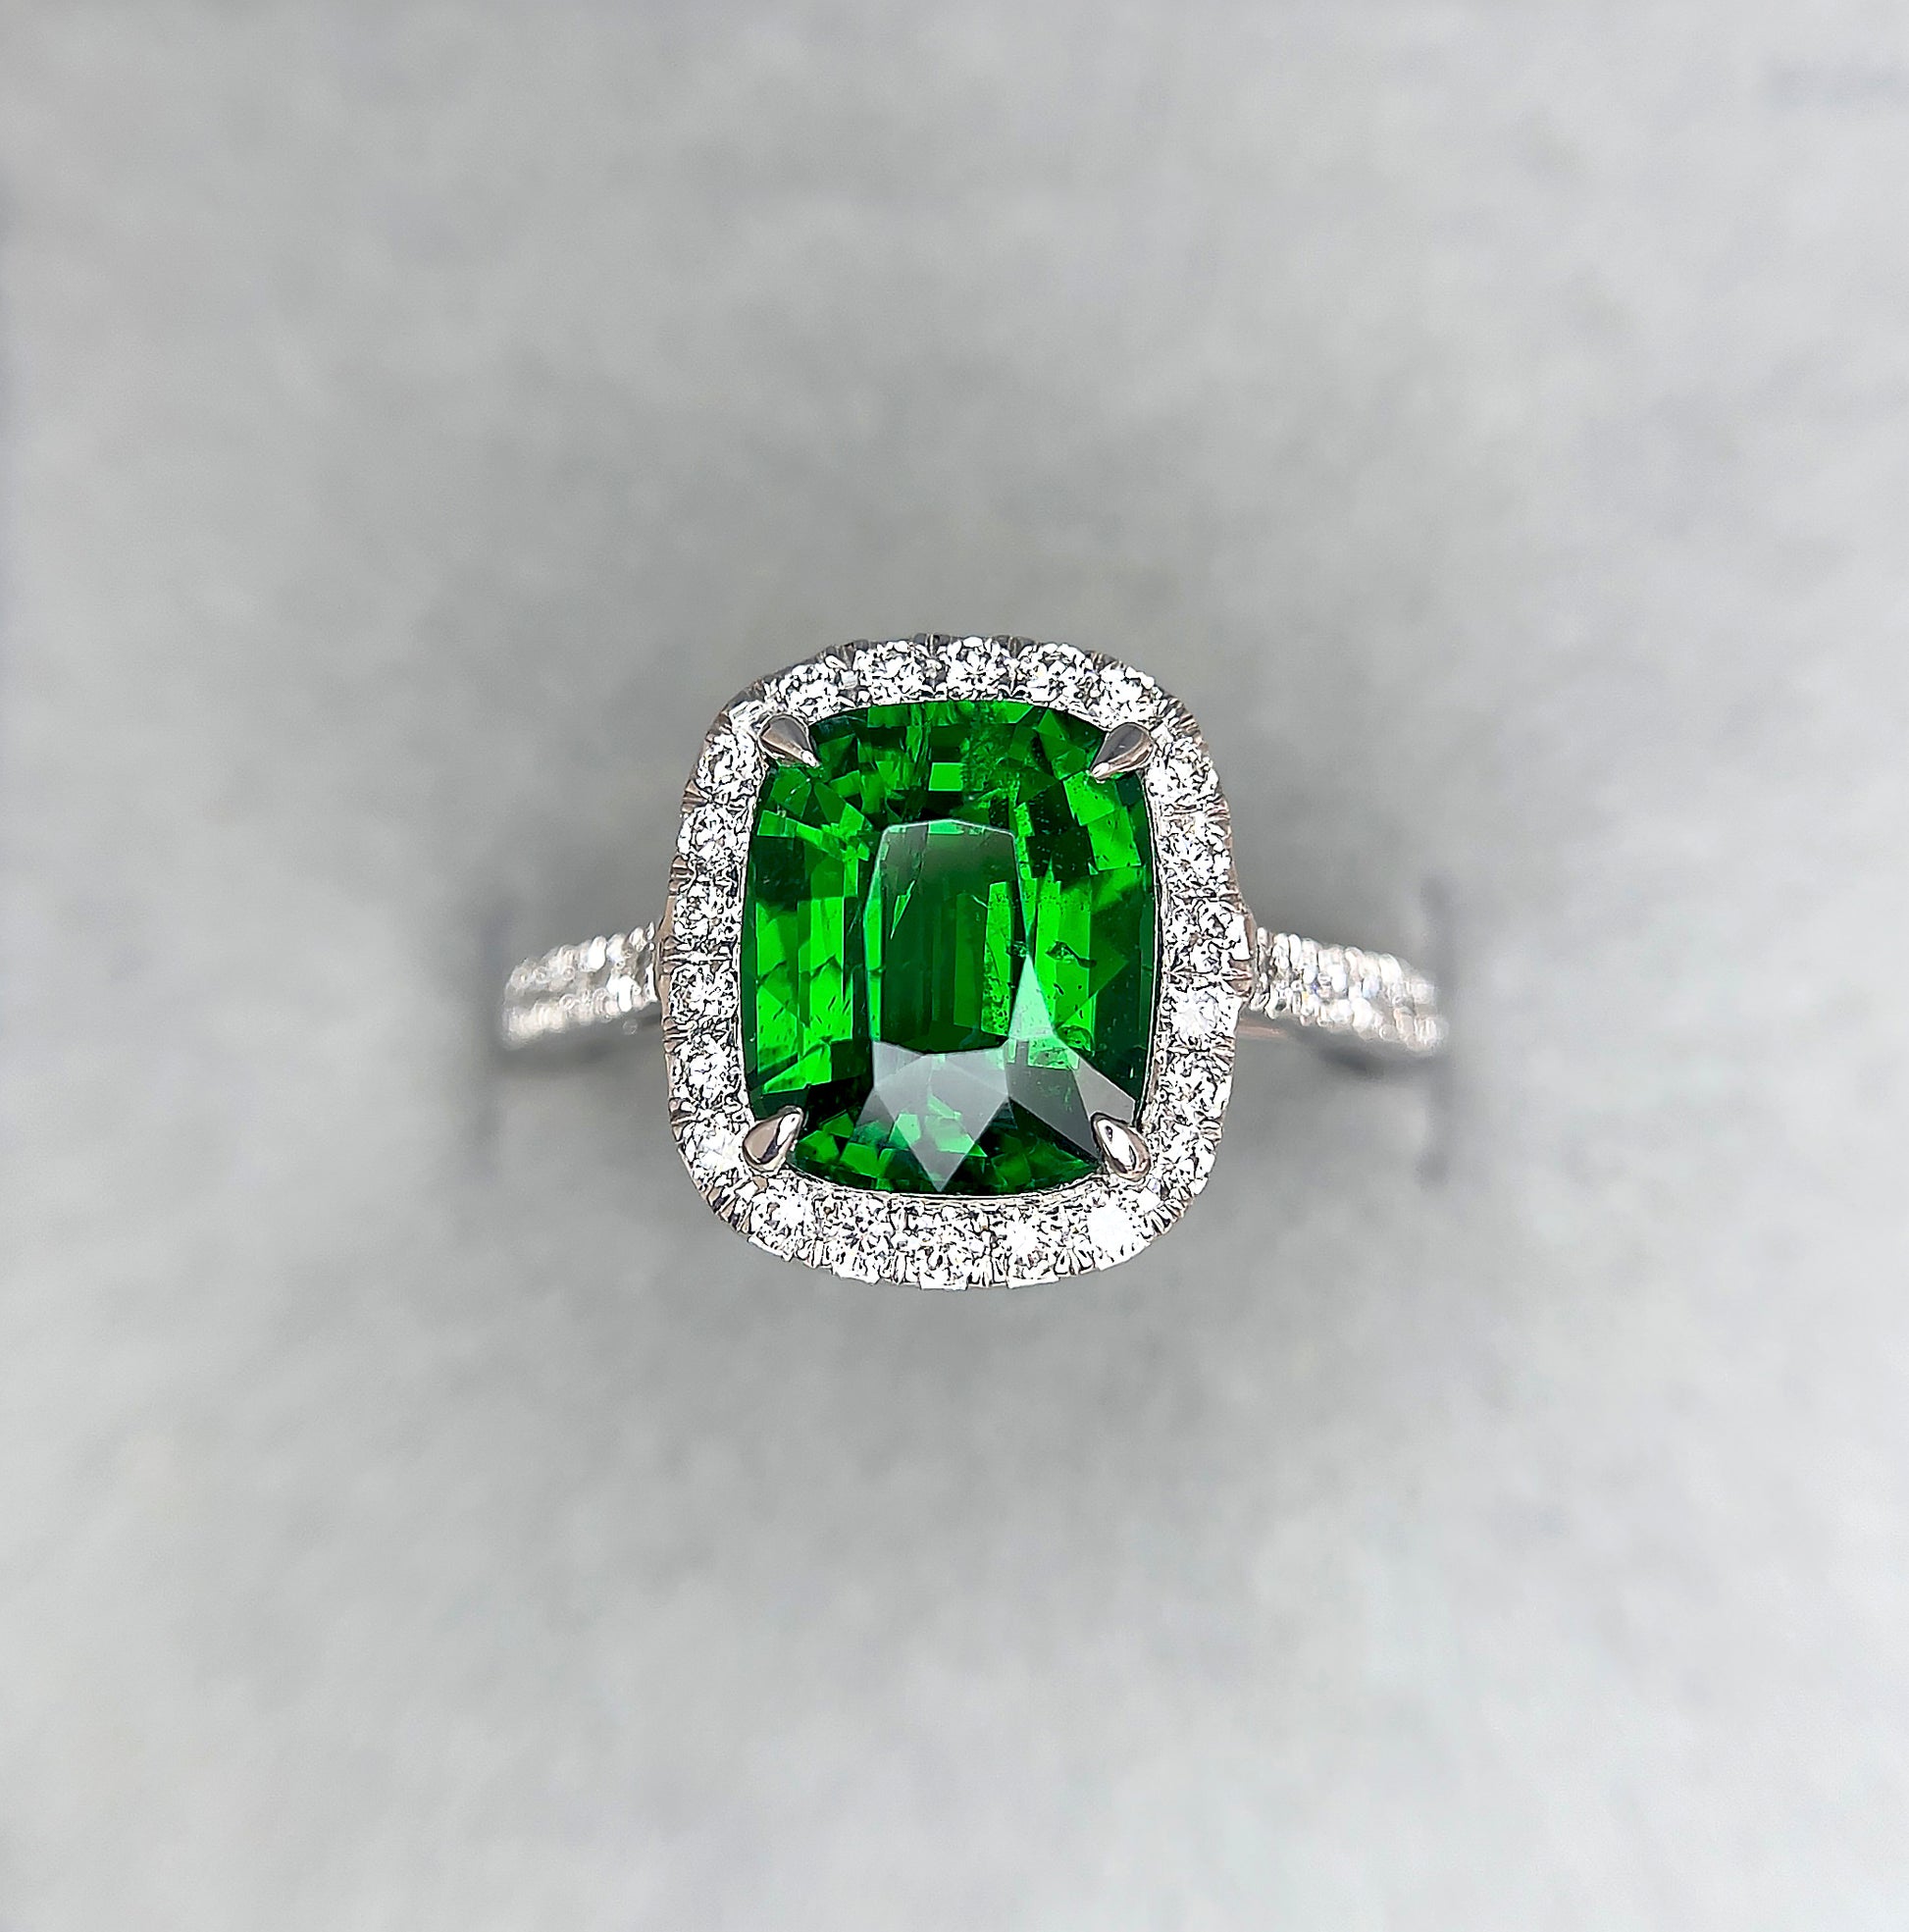 Green Garnet Ring, Garnet Ring 18k White gold, tsavorite garnet ring, unique ring, gift for her, Anniversary, Green Gemstone Engagement ring